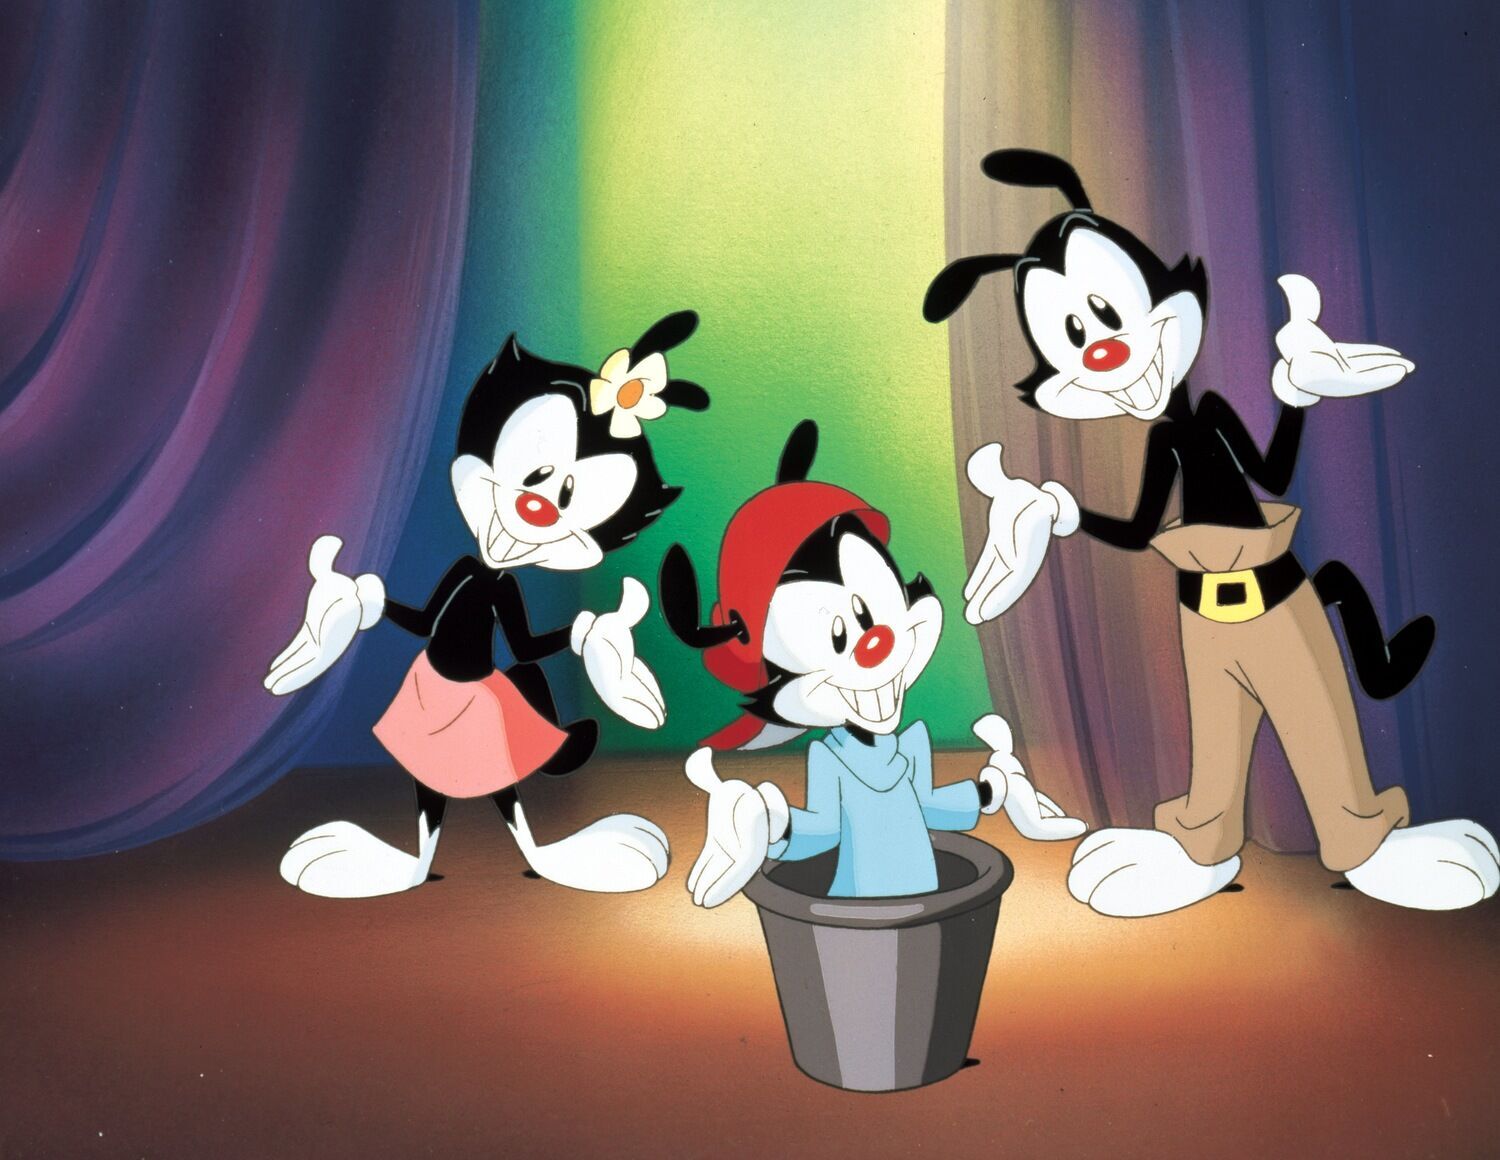 "Анимашки" были лучшим мультсериалом, созданным под крылом Стивена Спилберга